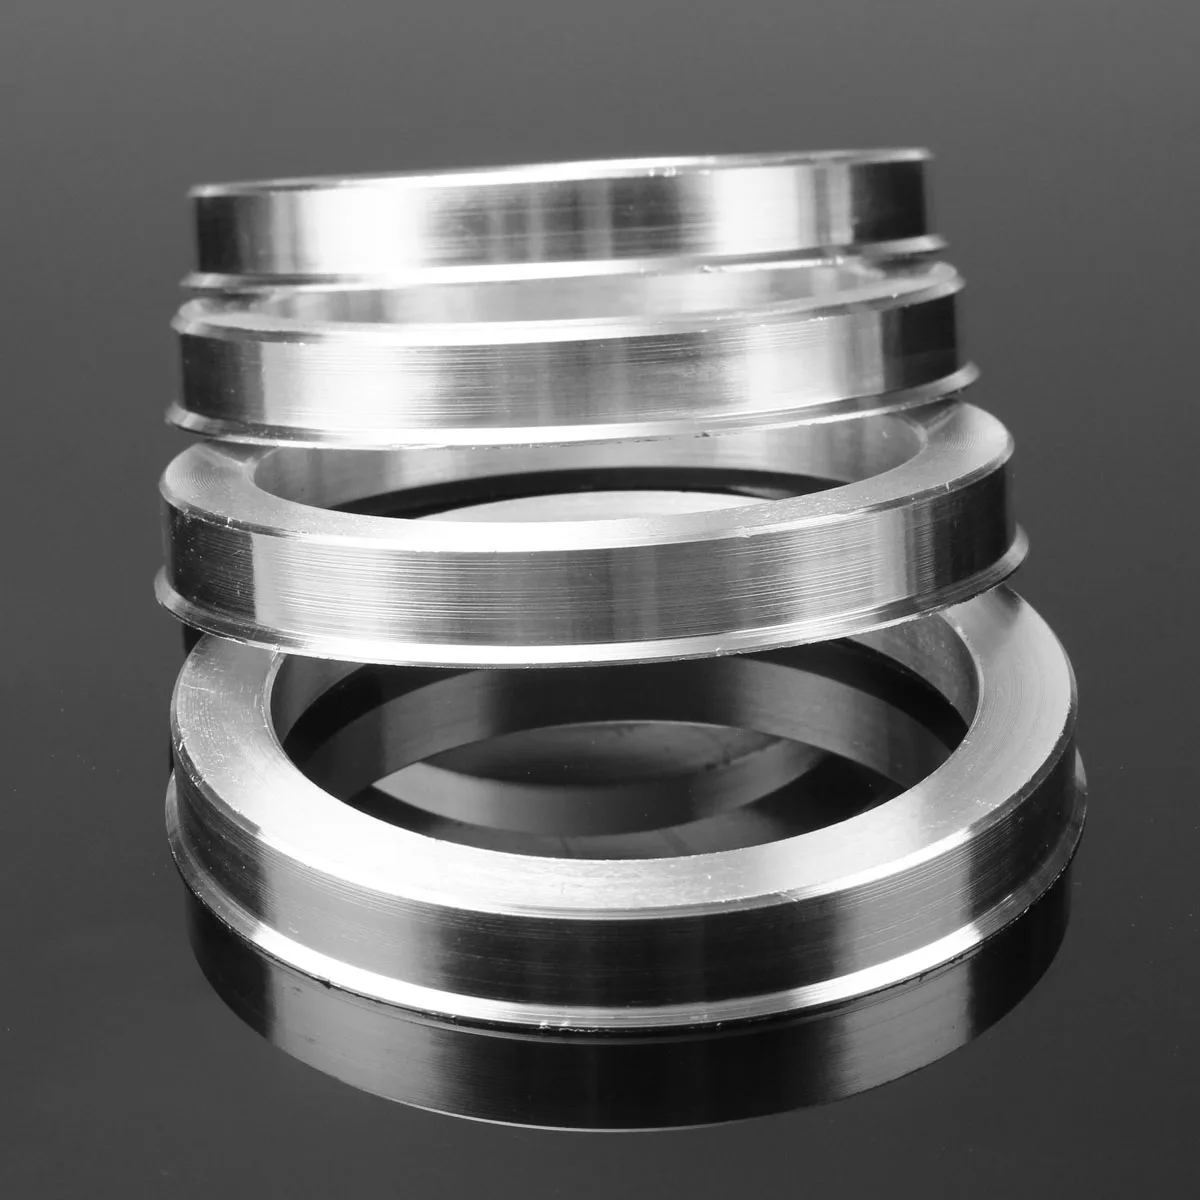 4 шт. 73,1 мм-57,1 мм Универсальный алюминиевый концентратор центриковое кольцо колеса прокладки набор 73,1 мм O/D 57,1 мм I/D